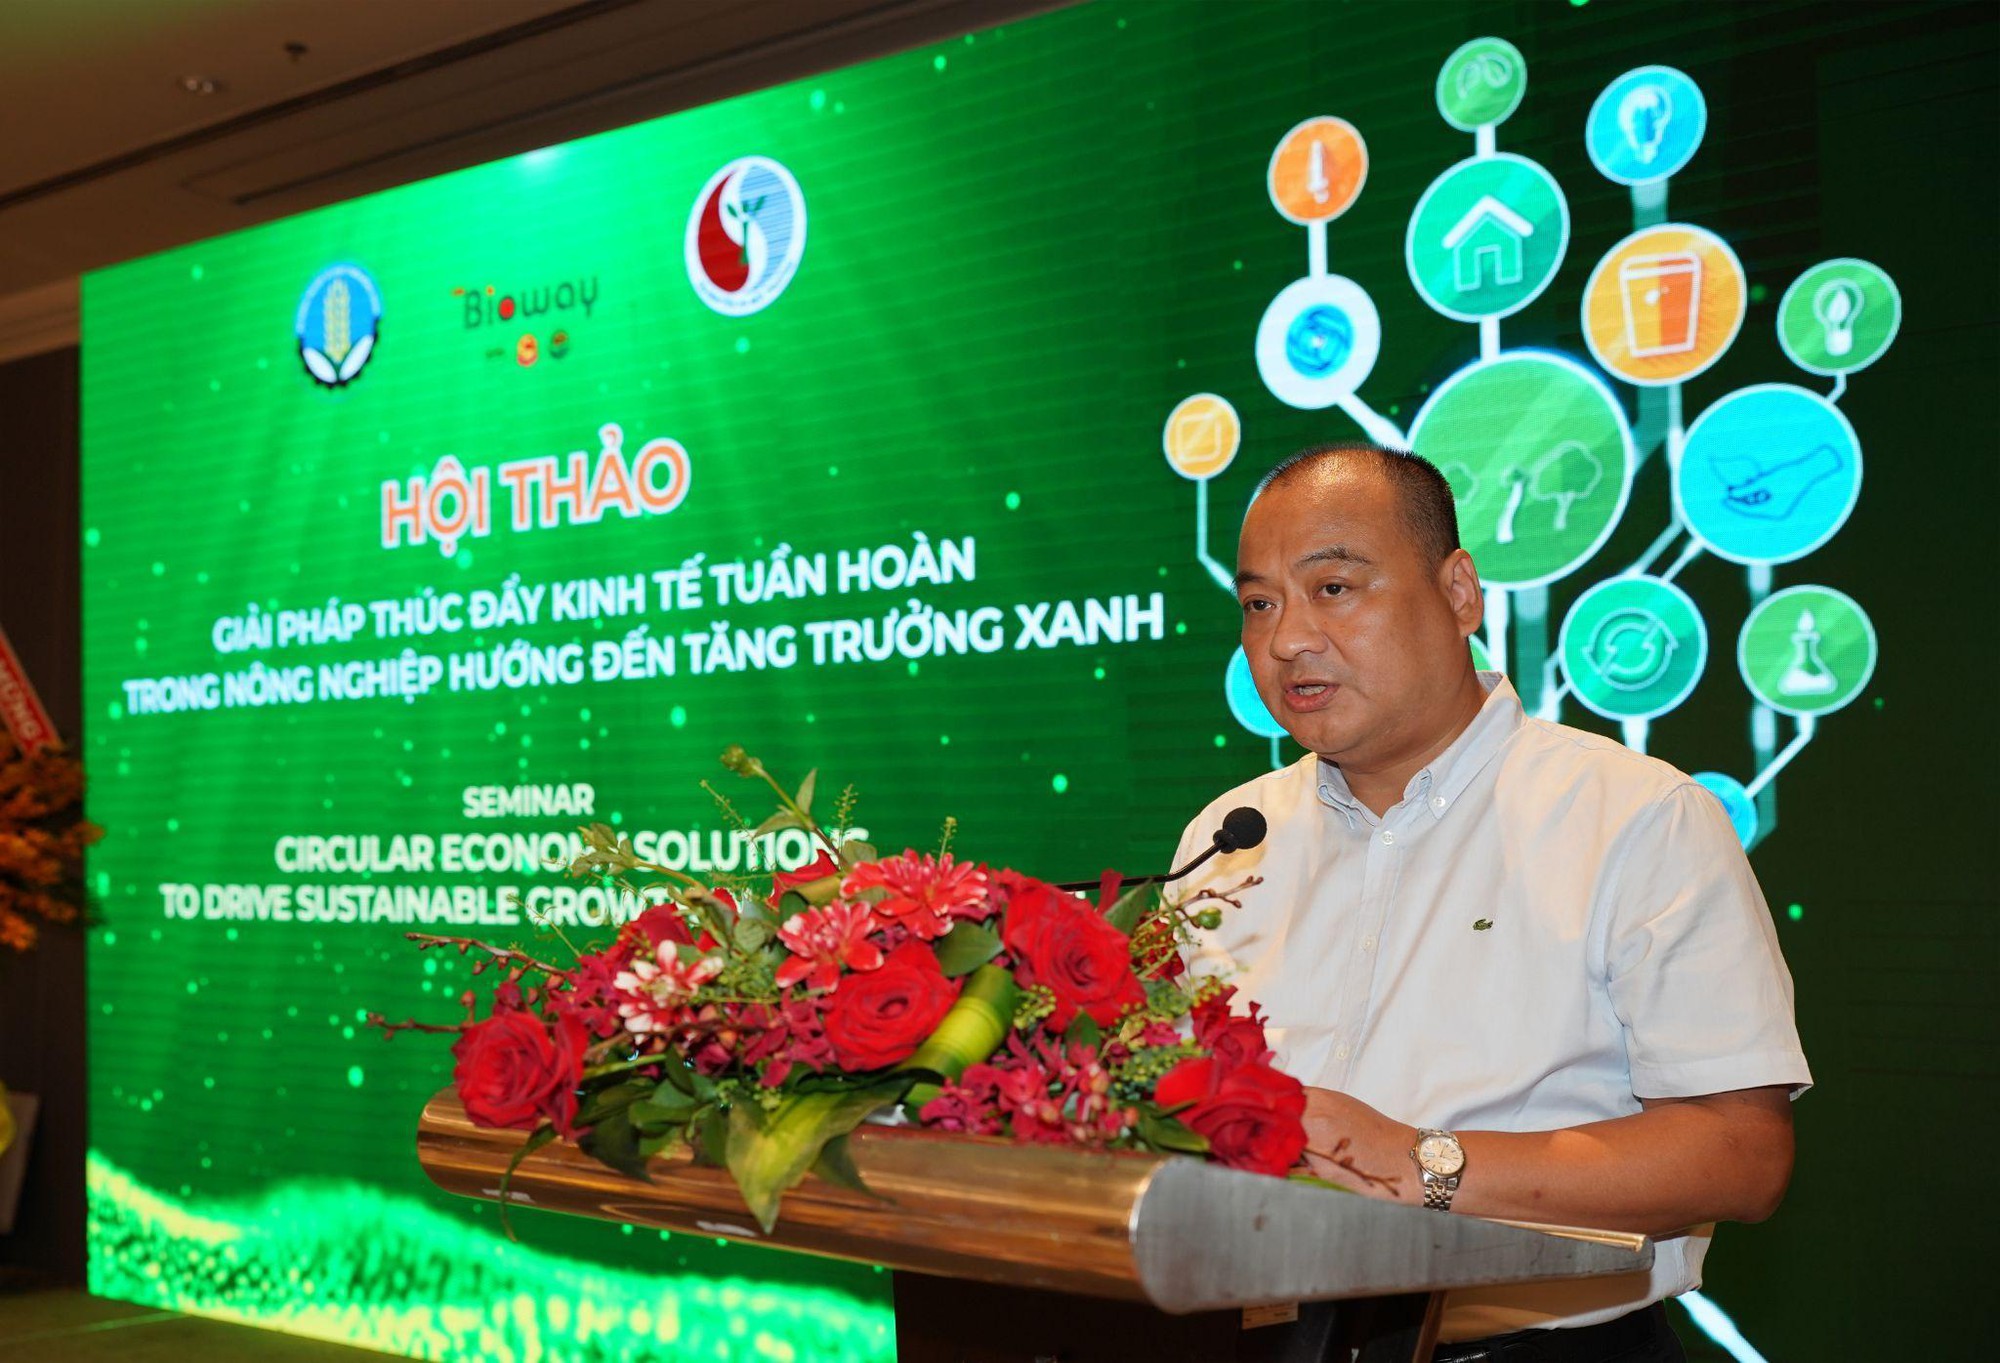 Bioway Việt Nam chú trọng thúc đẩy kinh tế tuần hoàn trong nông nghiệp hướng đến tăng trưởng xanh - Ảnh 1.